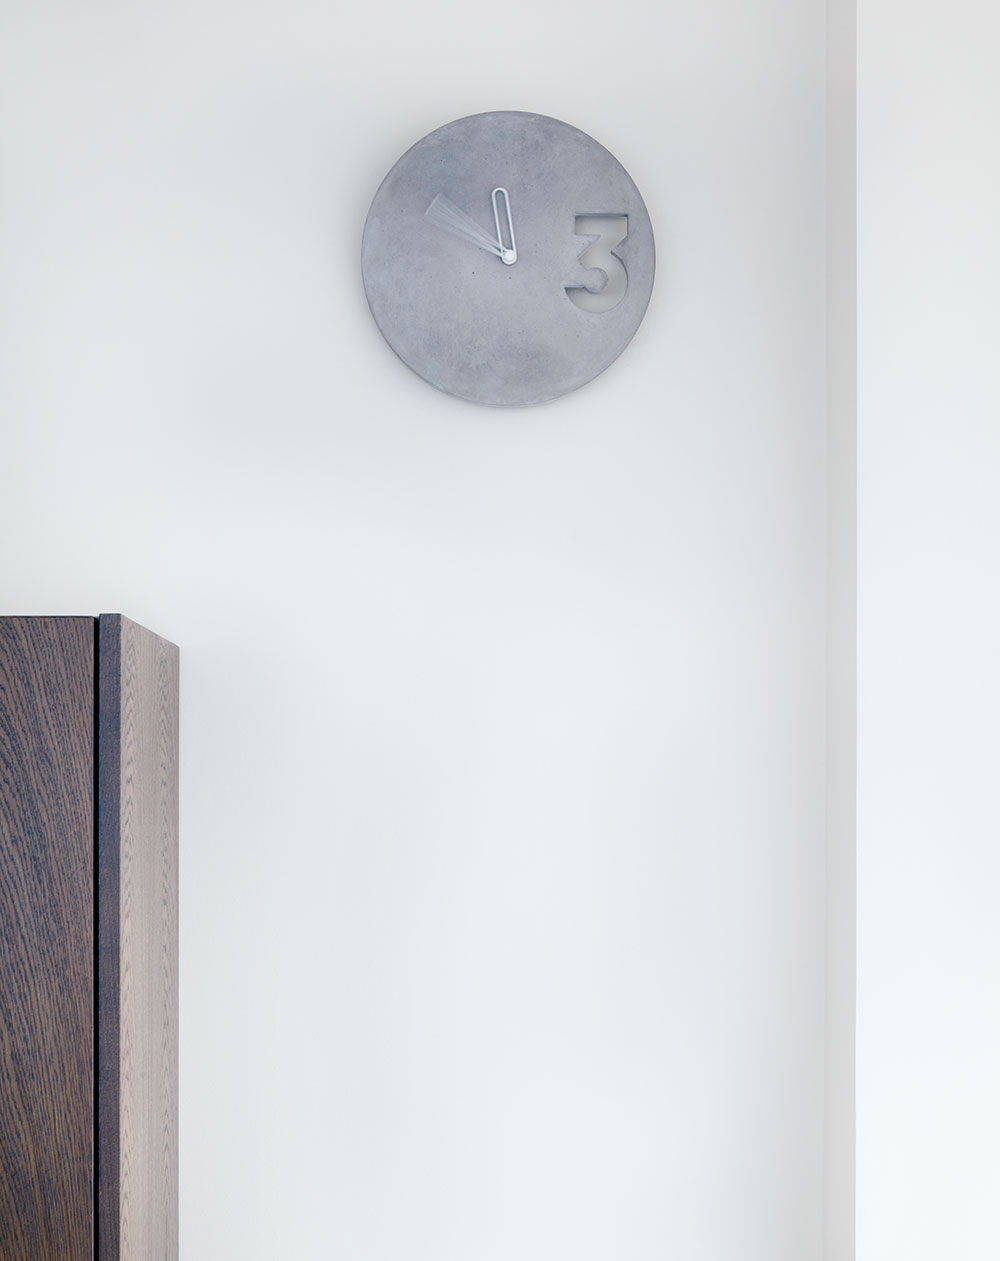 Minimalistické hodiny jsou jedním z betonových doplňků, krásně se vyjímají na stěně v kuchyňské části. FOTO BOYSPLAYNICE